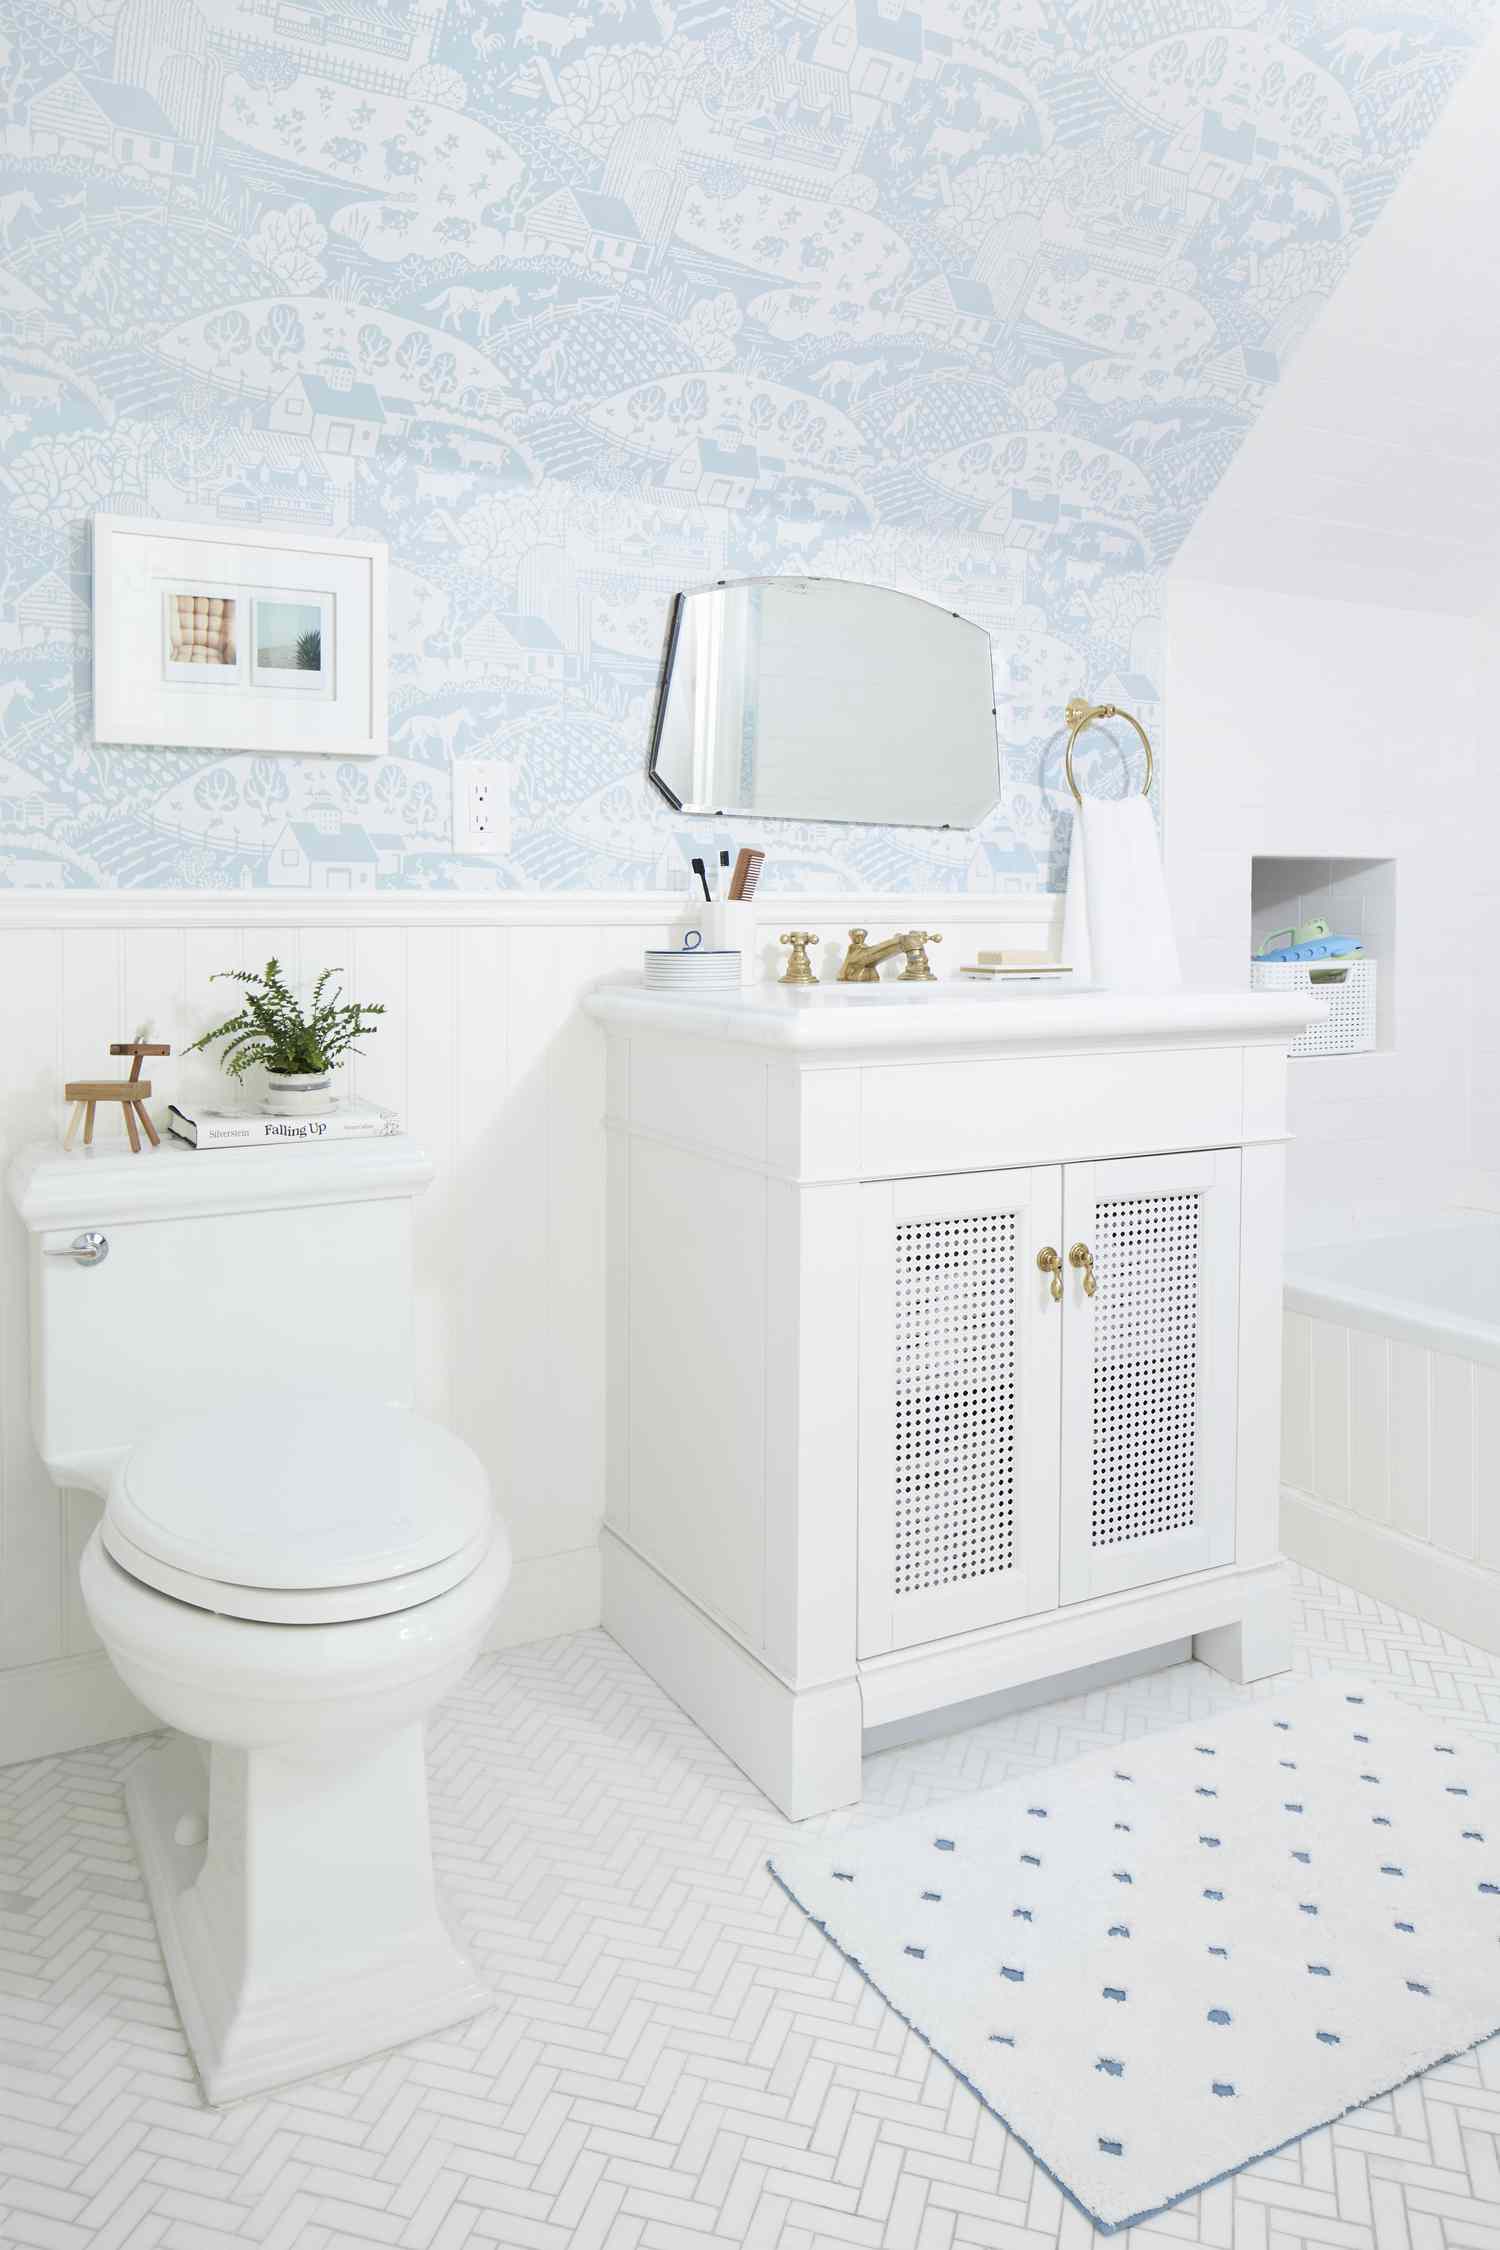 Baño blanco con papel pintado azul claro en paredes inclinadas